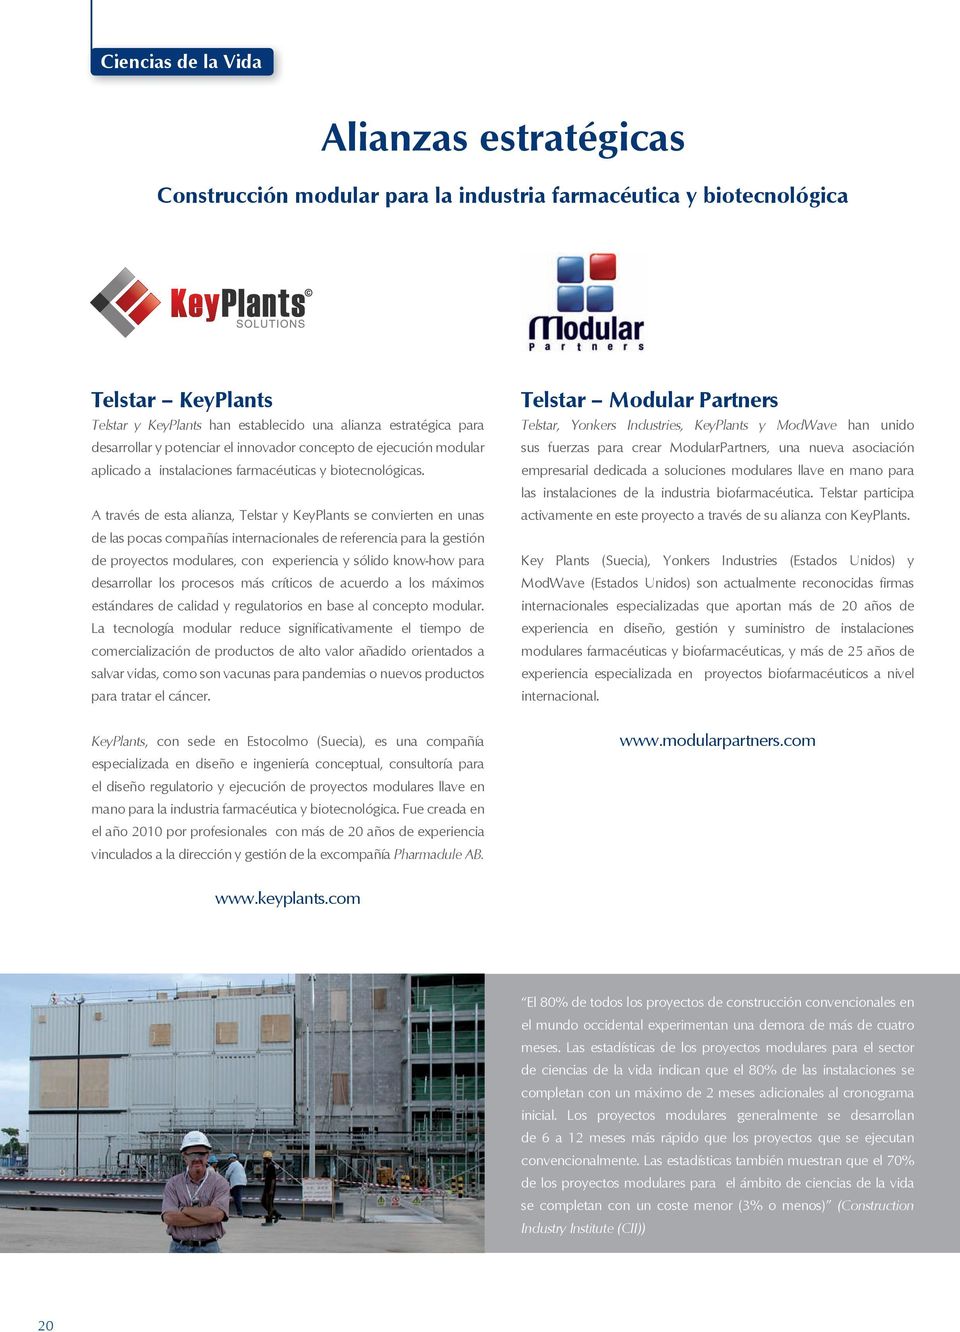 A través de esta alianza, Telstar y KeyPlants se convierten en unas de las pocas compañías internacionales de referencia para la gestión de proyectos modulares, con experiencia y sólido know-how para